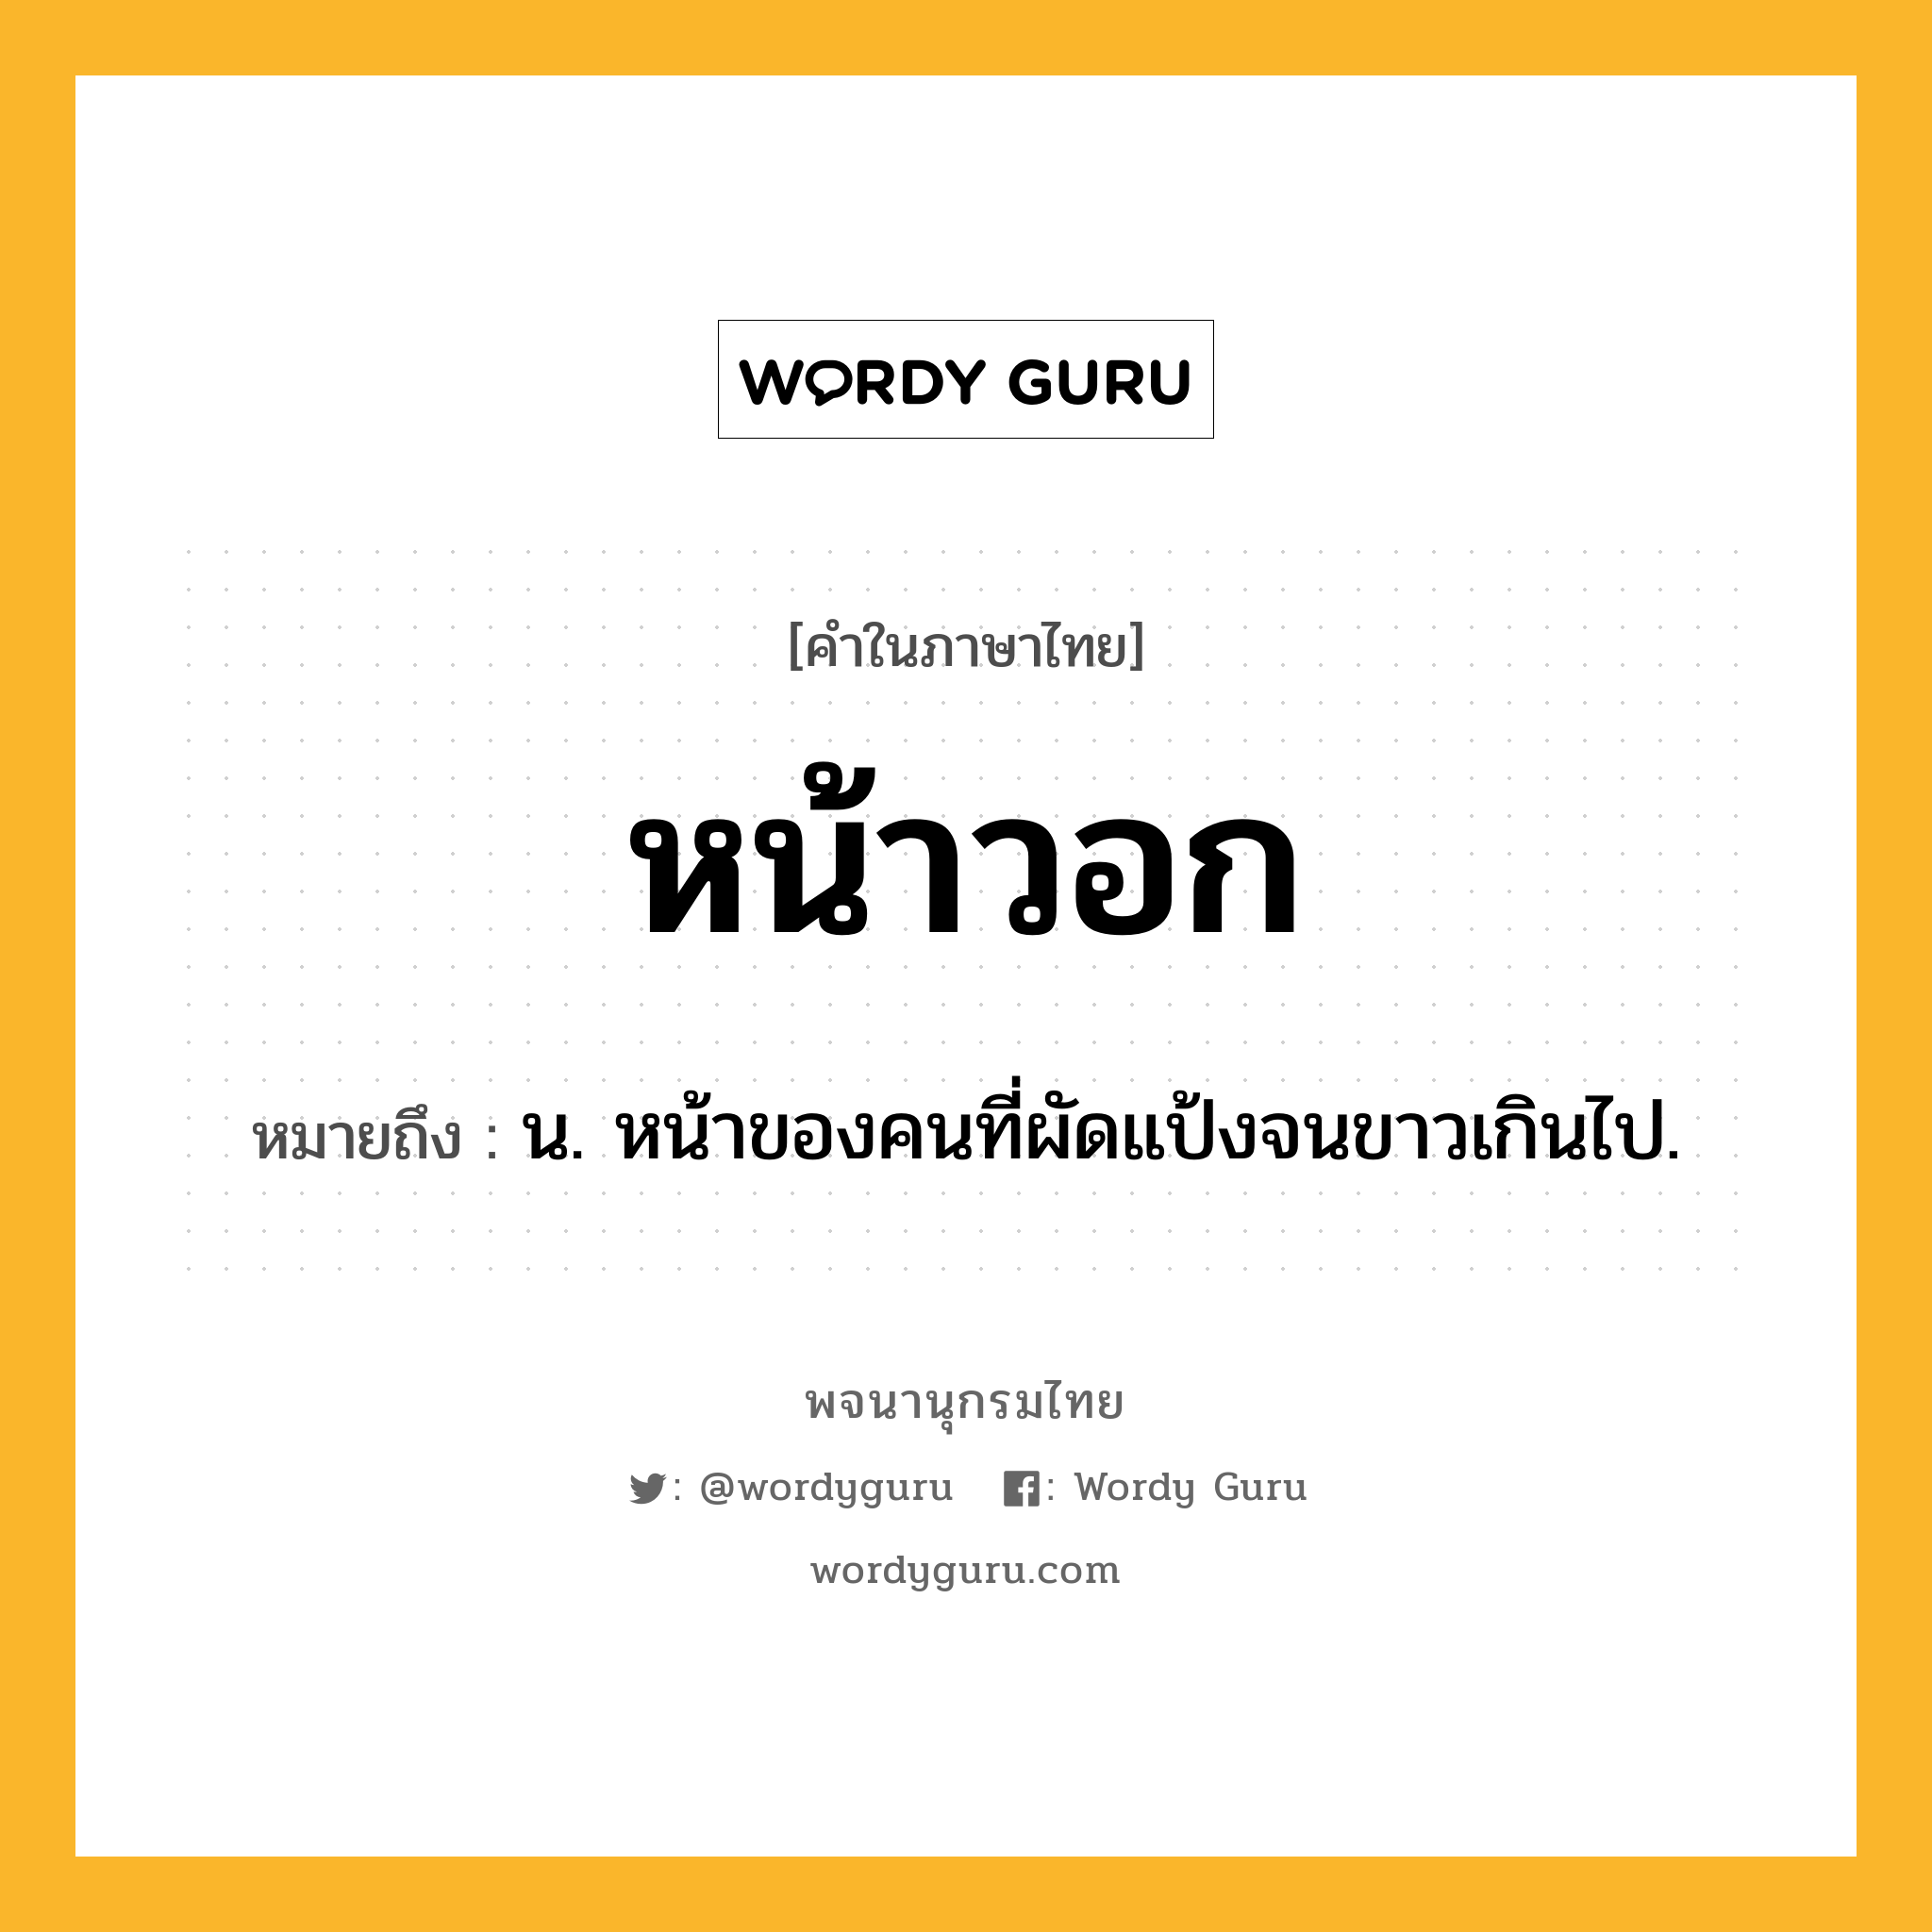 หน้าวอก หมายถึงอะไร?, คำในภาษาไทย หน้าวอก หมายถึง น. หน้าของคนที่ผัดแป้งจนขาวเกินไป.